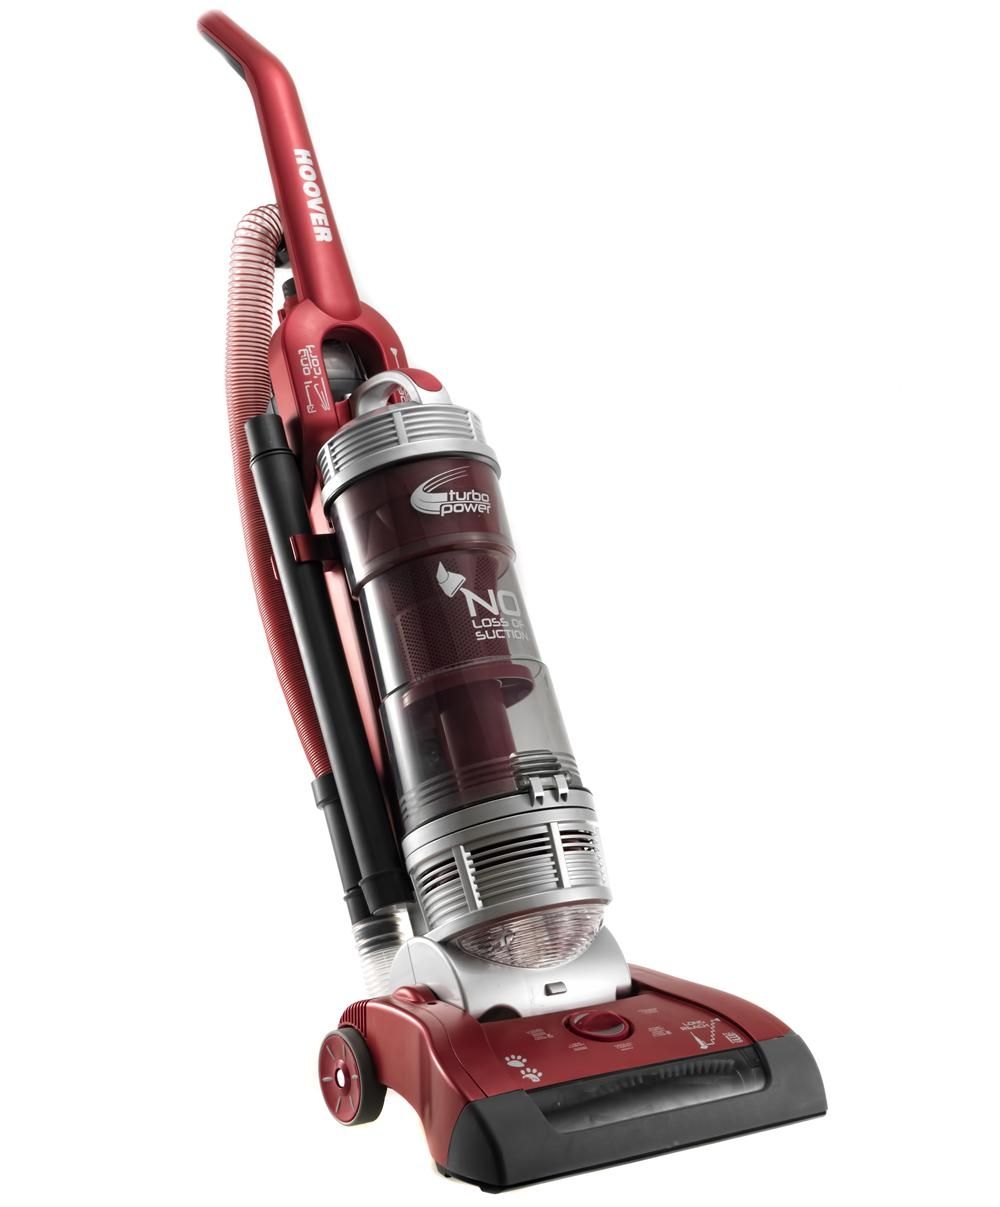 Vacuum cleaner repairs in Colney Hatch